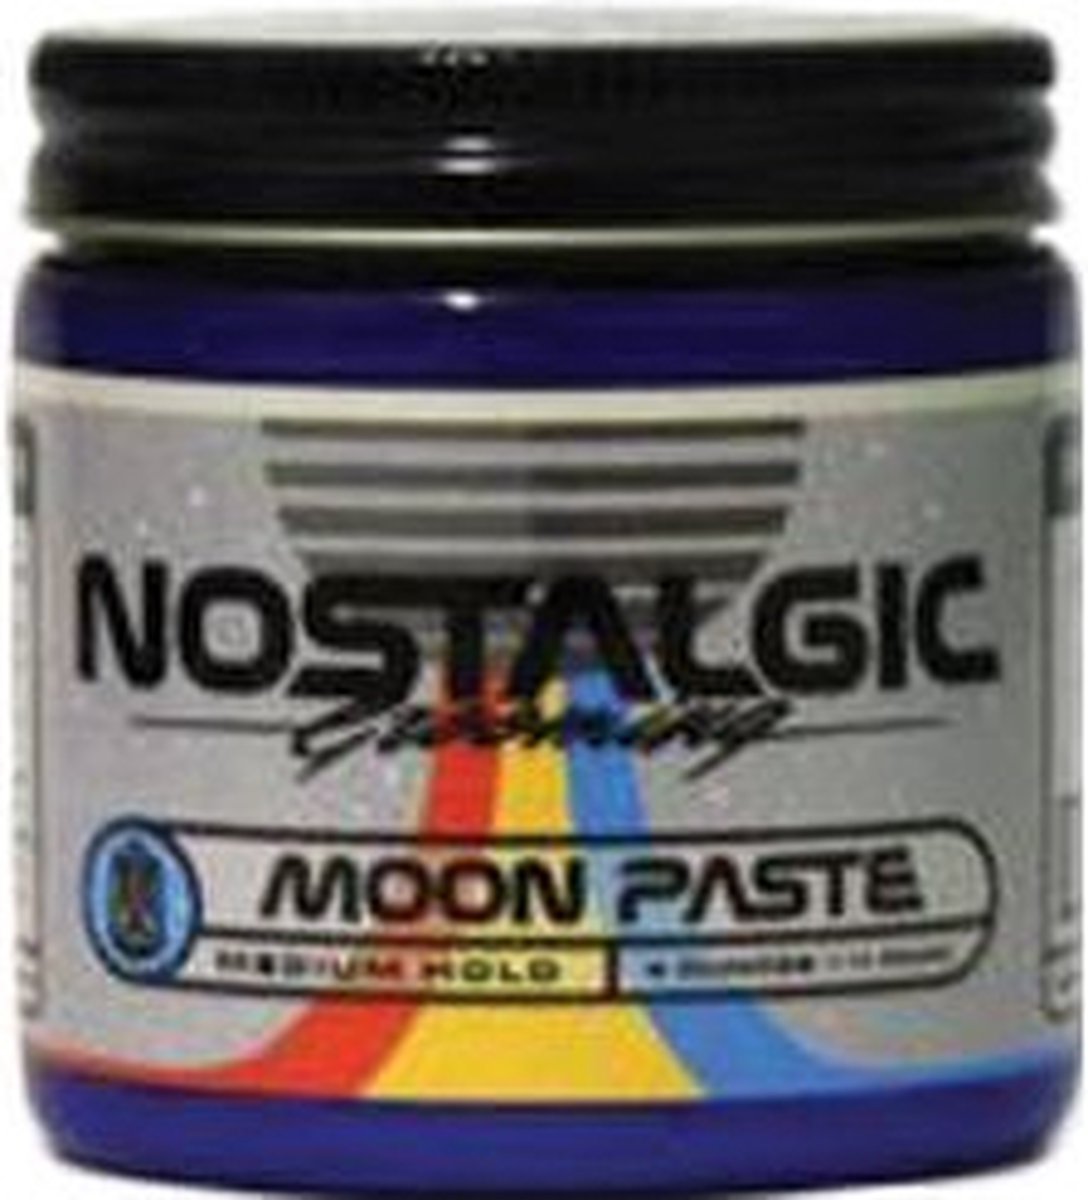 Nostalgic Moon Paste Space Dust Original 118 ml.